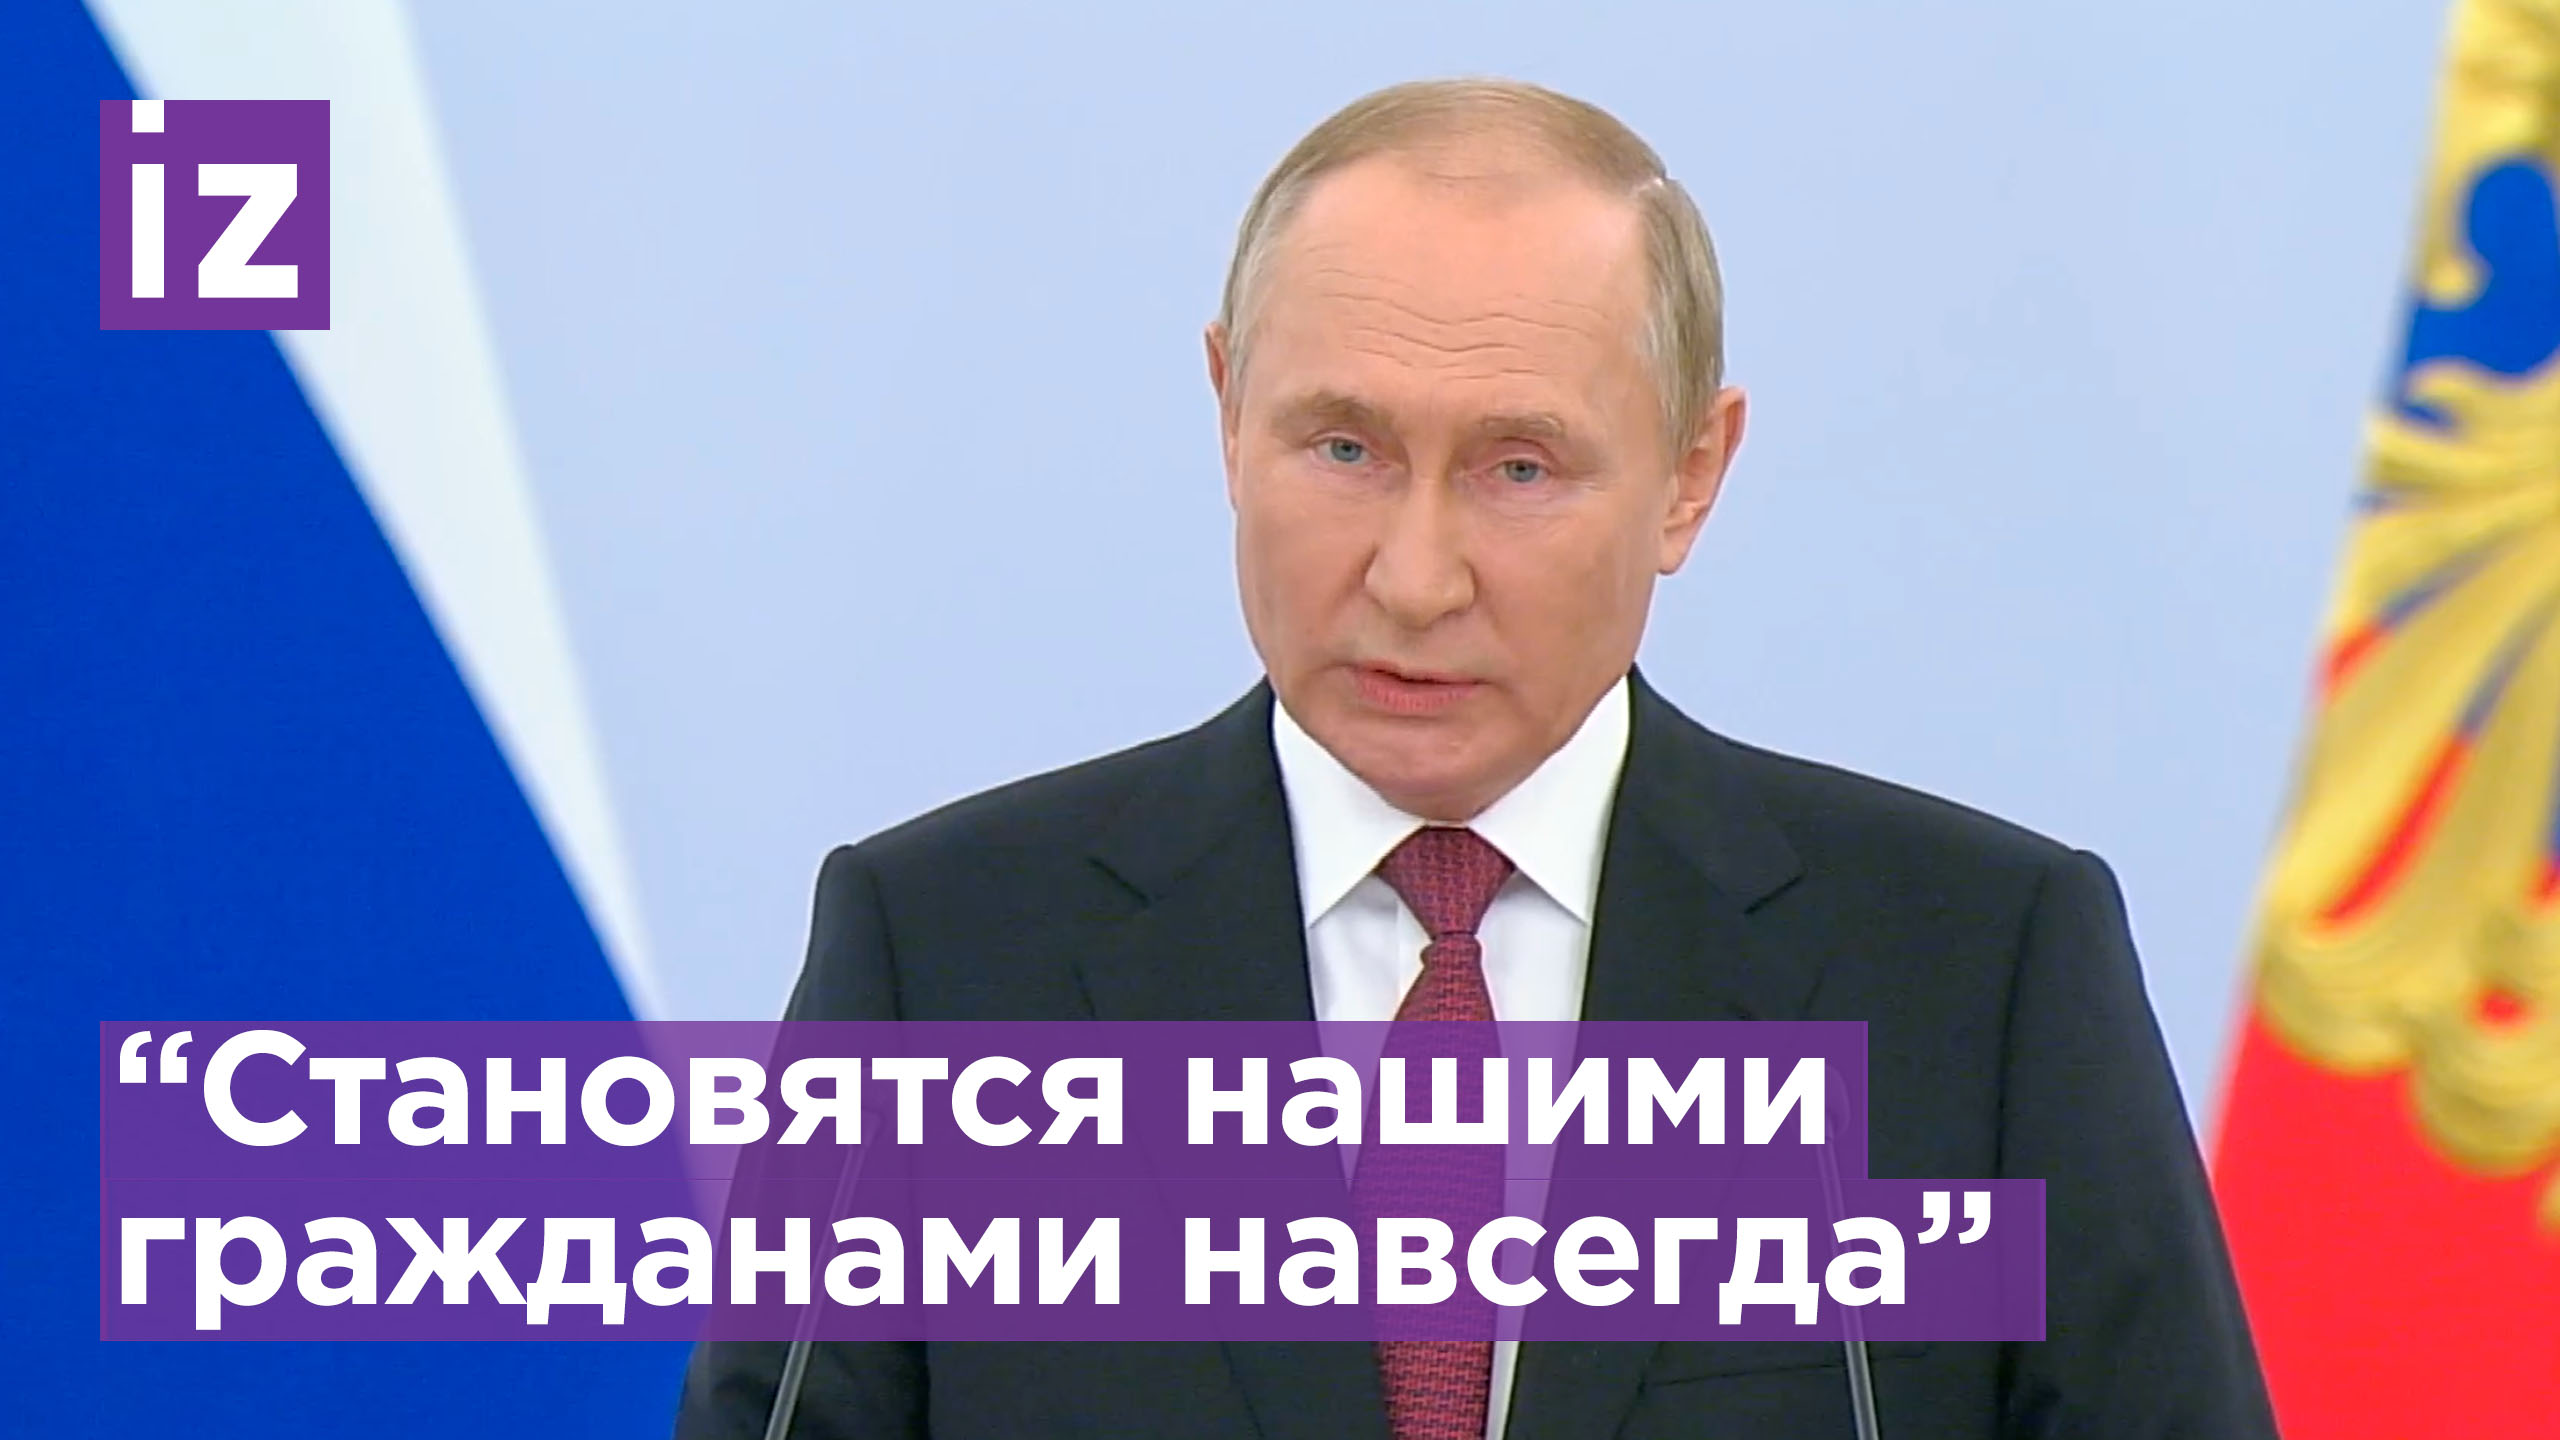 Путин: Люди, живущие в Луганске, Донецке, Херсоне и Запорожье становятся нашими гражданами навсегда!